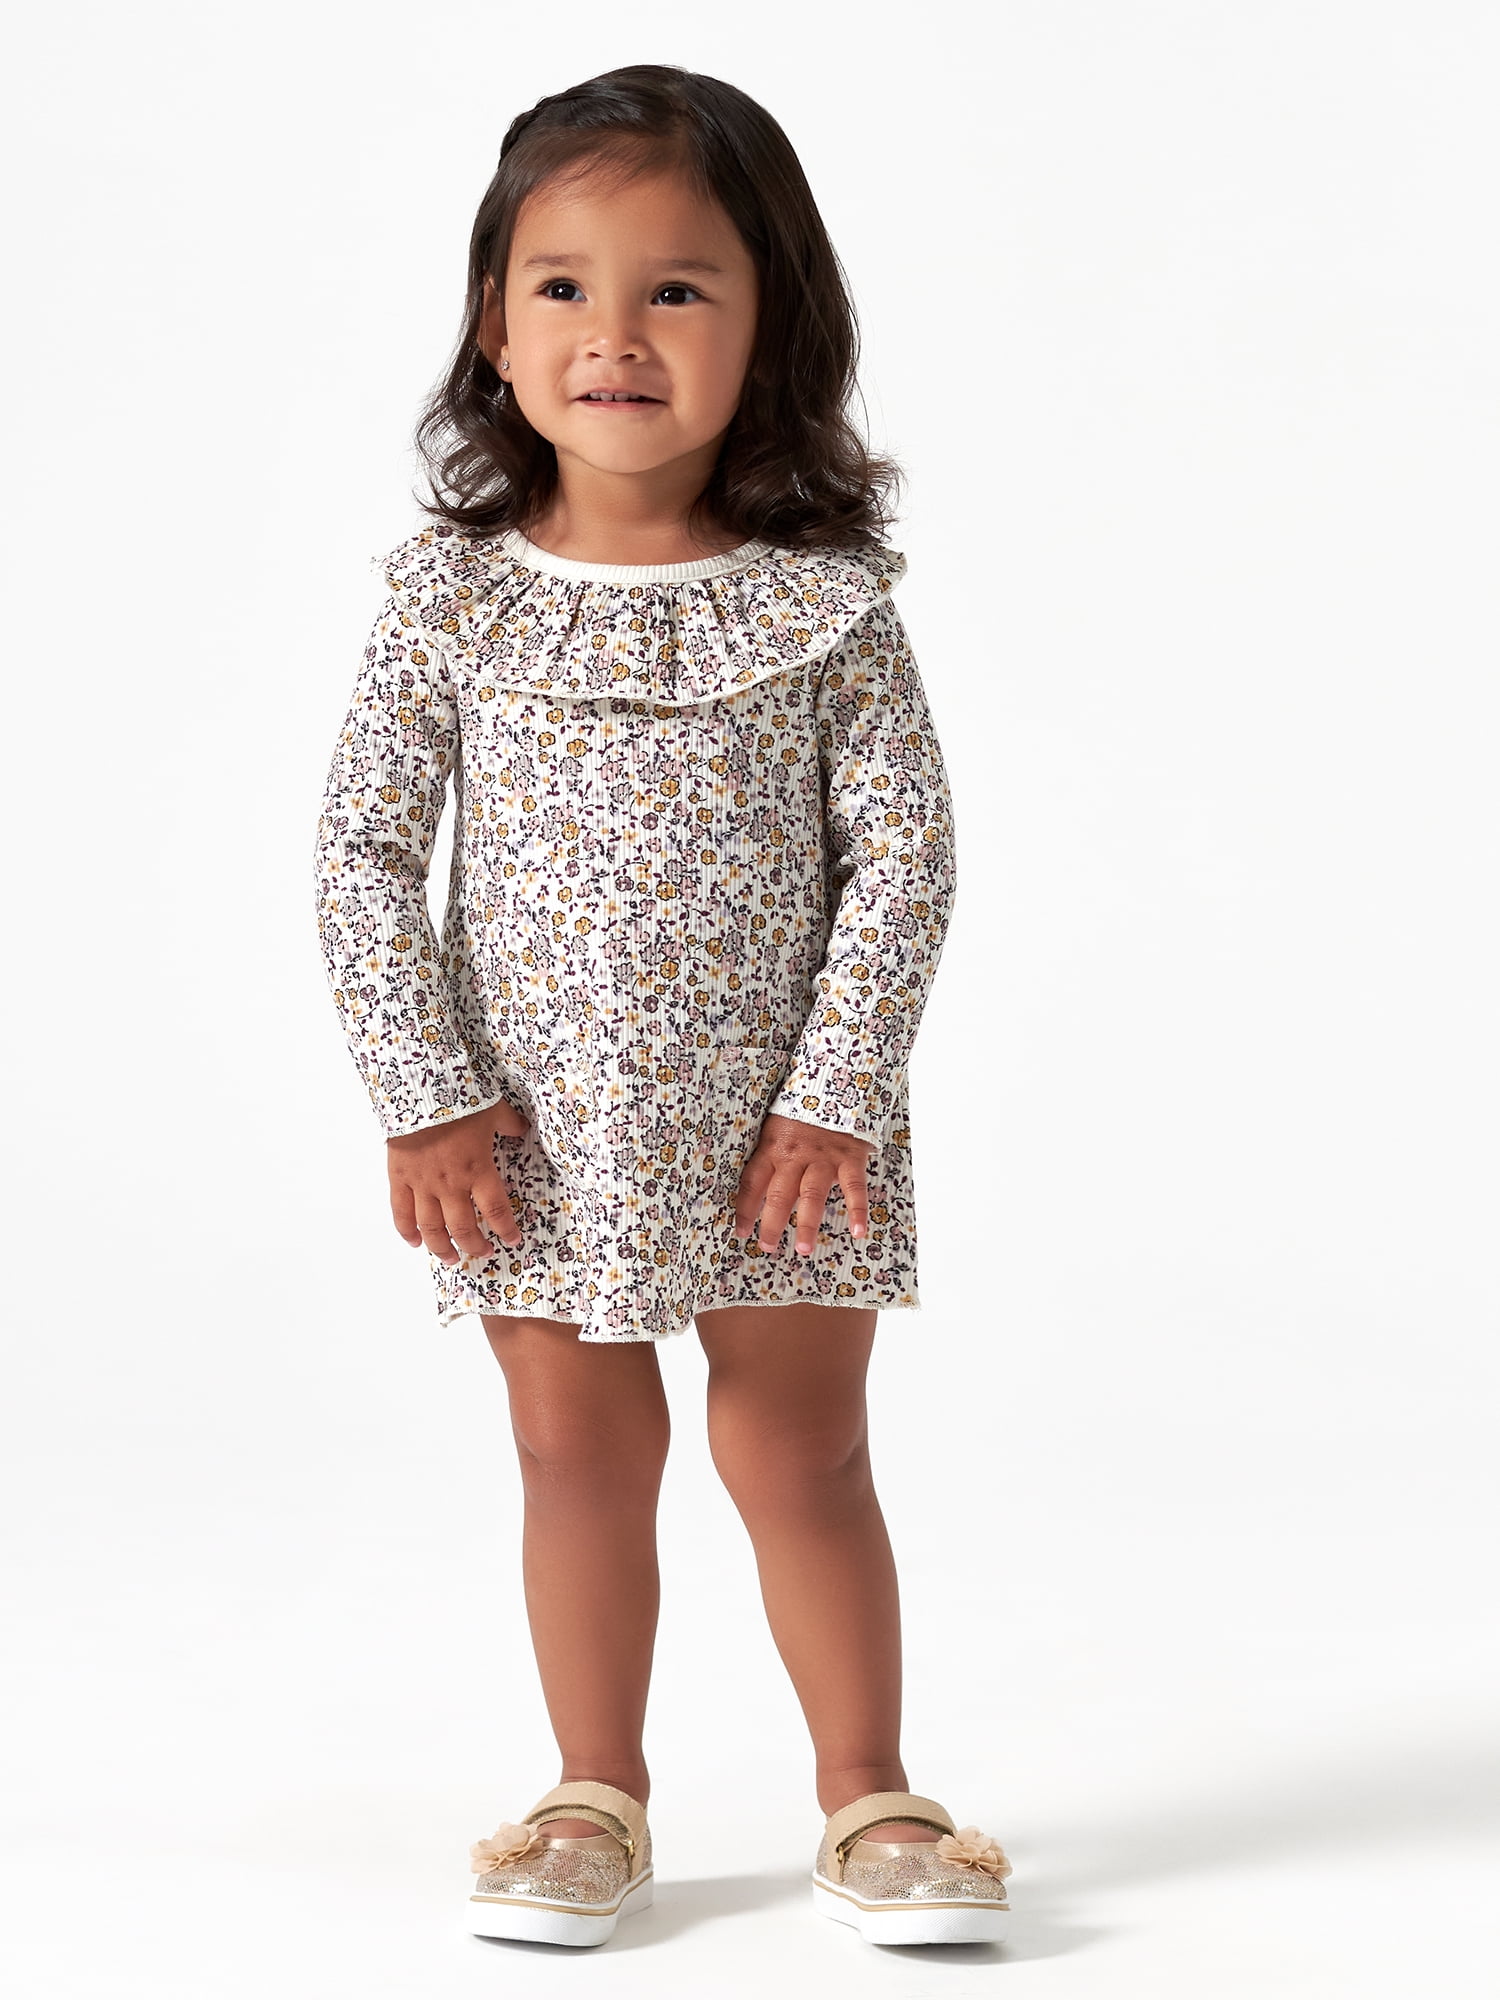 Dress Size 12 Kids Modern Dresses for Girls Toddler Girls Long Sleeve  Ruffles Plaid Prints Dress Belt Set Dress Little Girl - Walmart.com